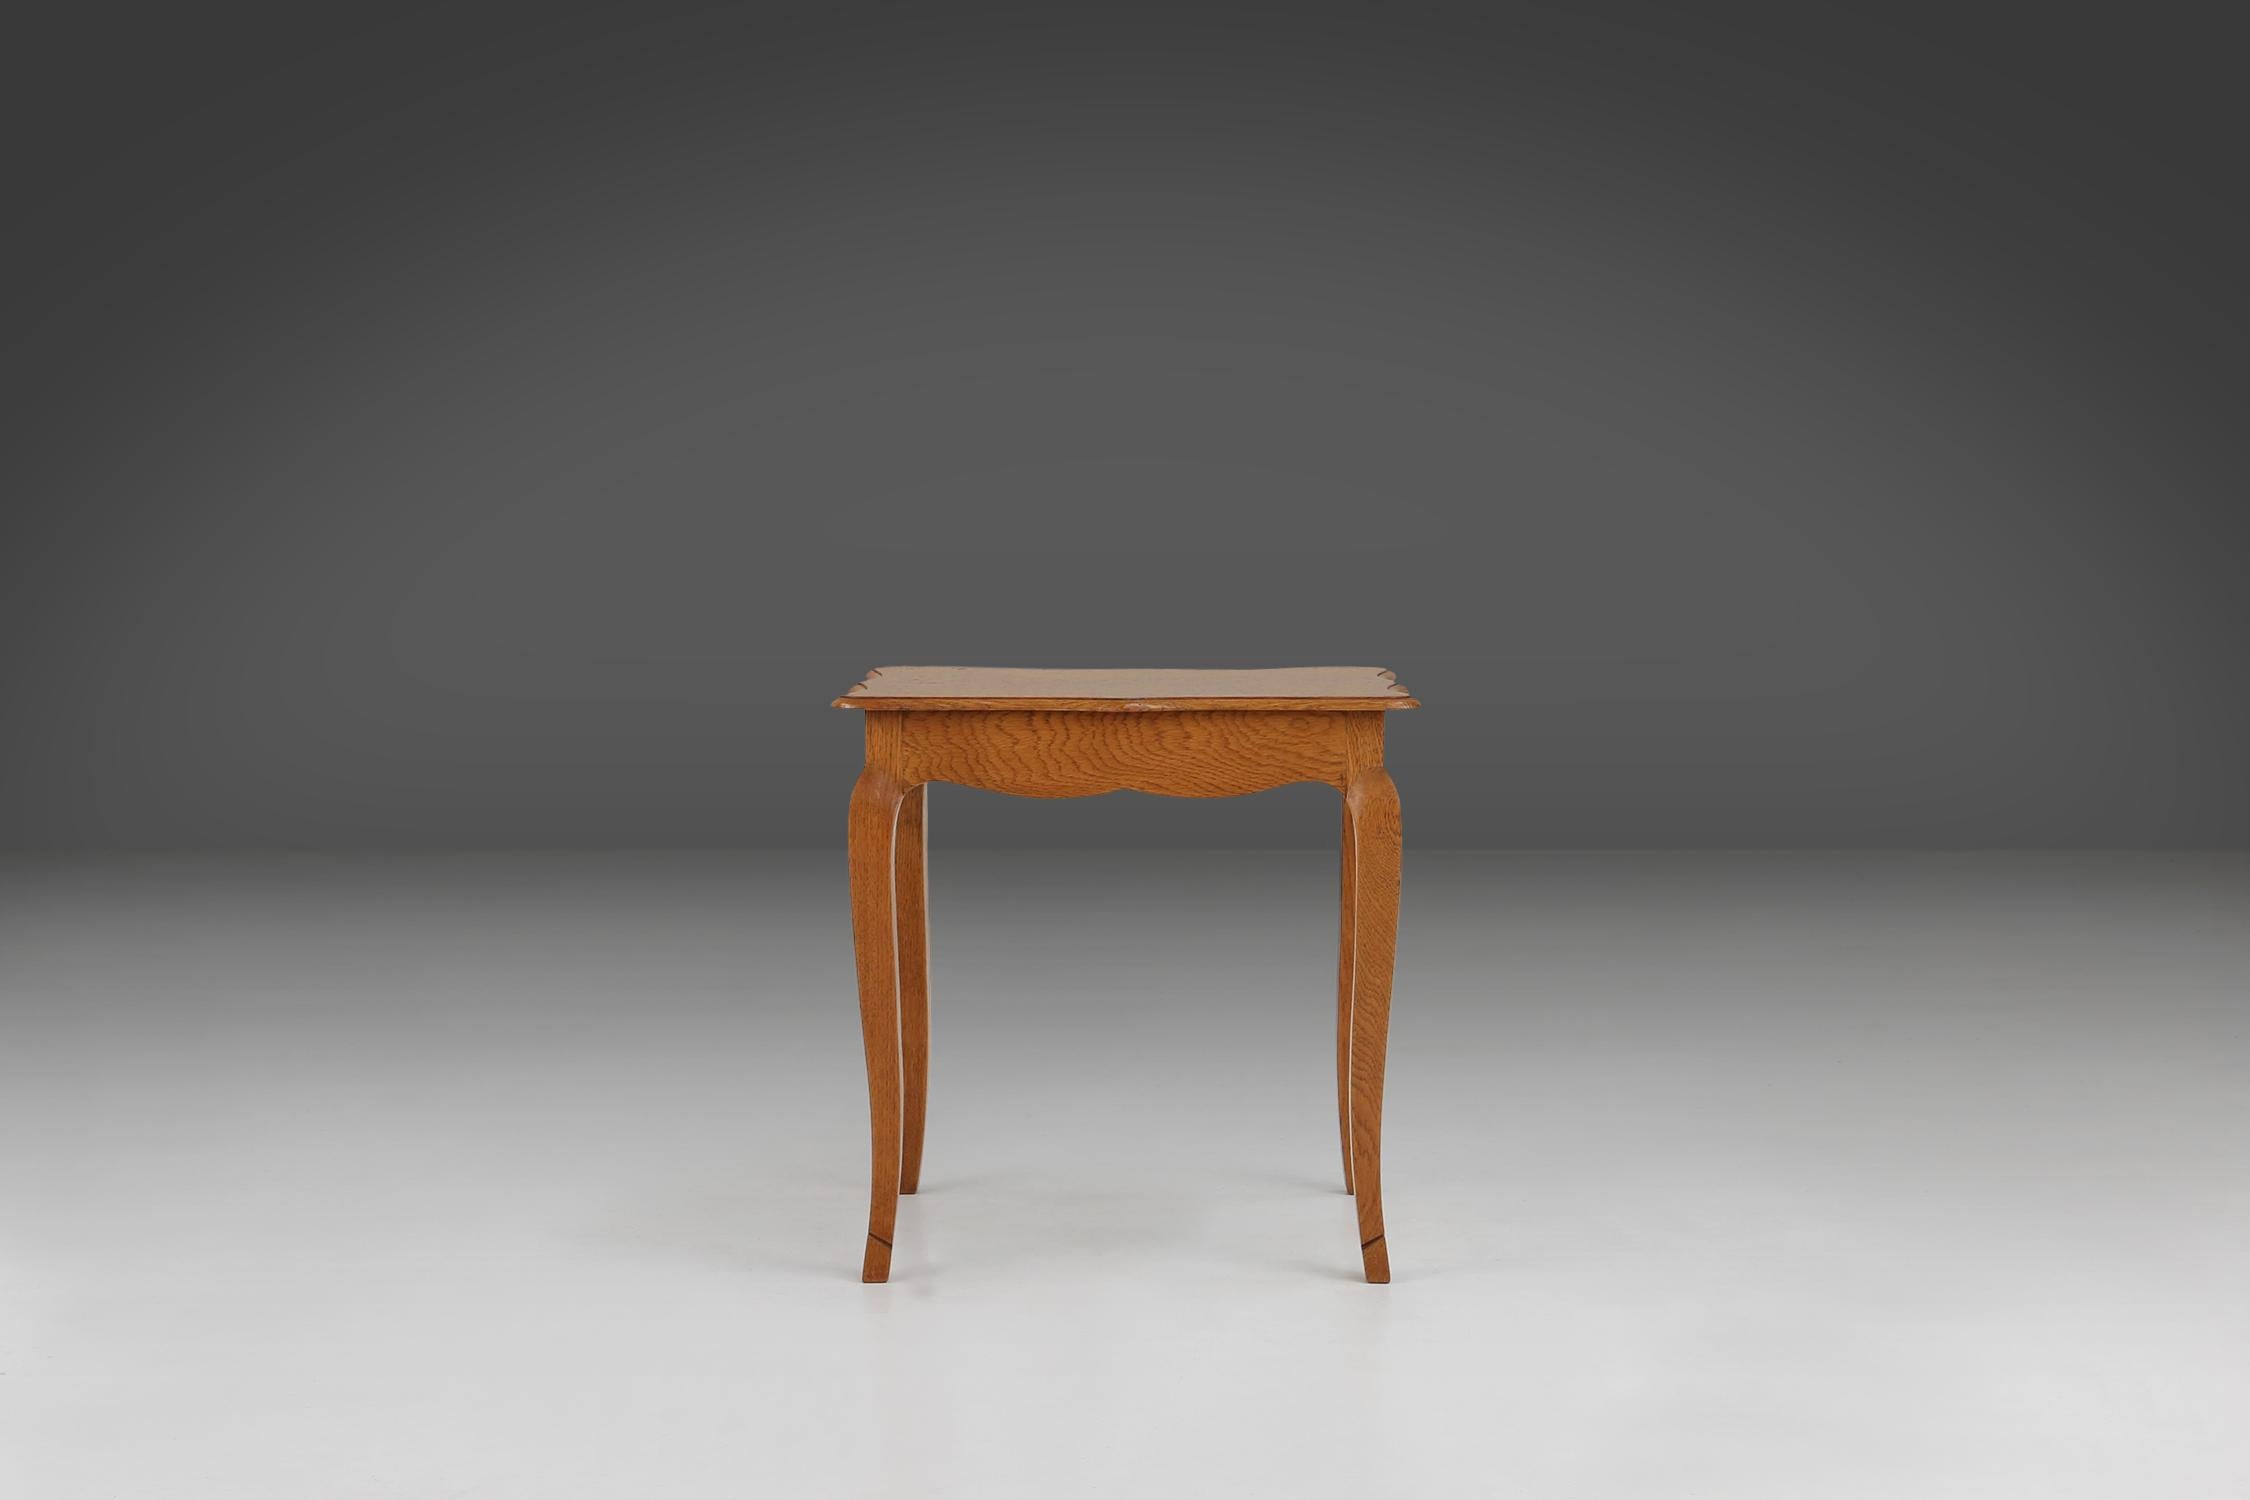 Table en bois fabriquée à la main avec ses lignes gracieuses et sa finition riche et chaleureuse, ce meuble est conçu pour ajouter à la fois fonctionnalité et style à votre espace.

Ses pieds décoratifs et ses sculptures détaillées témoignent d'un